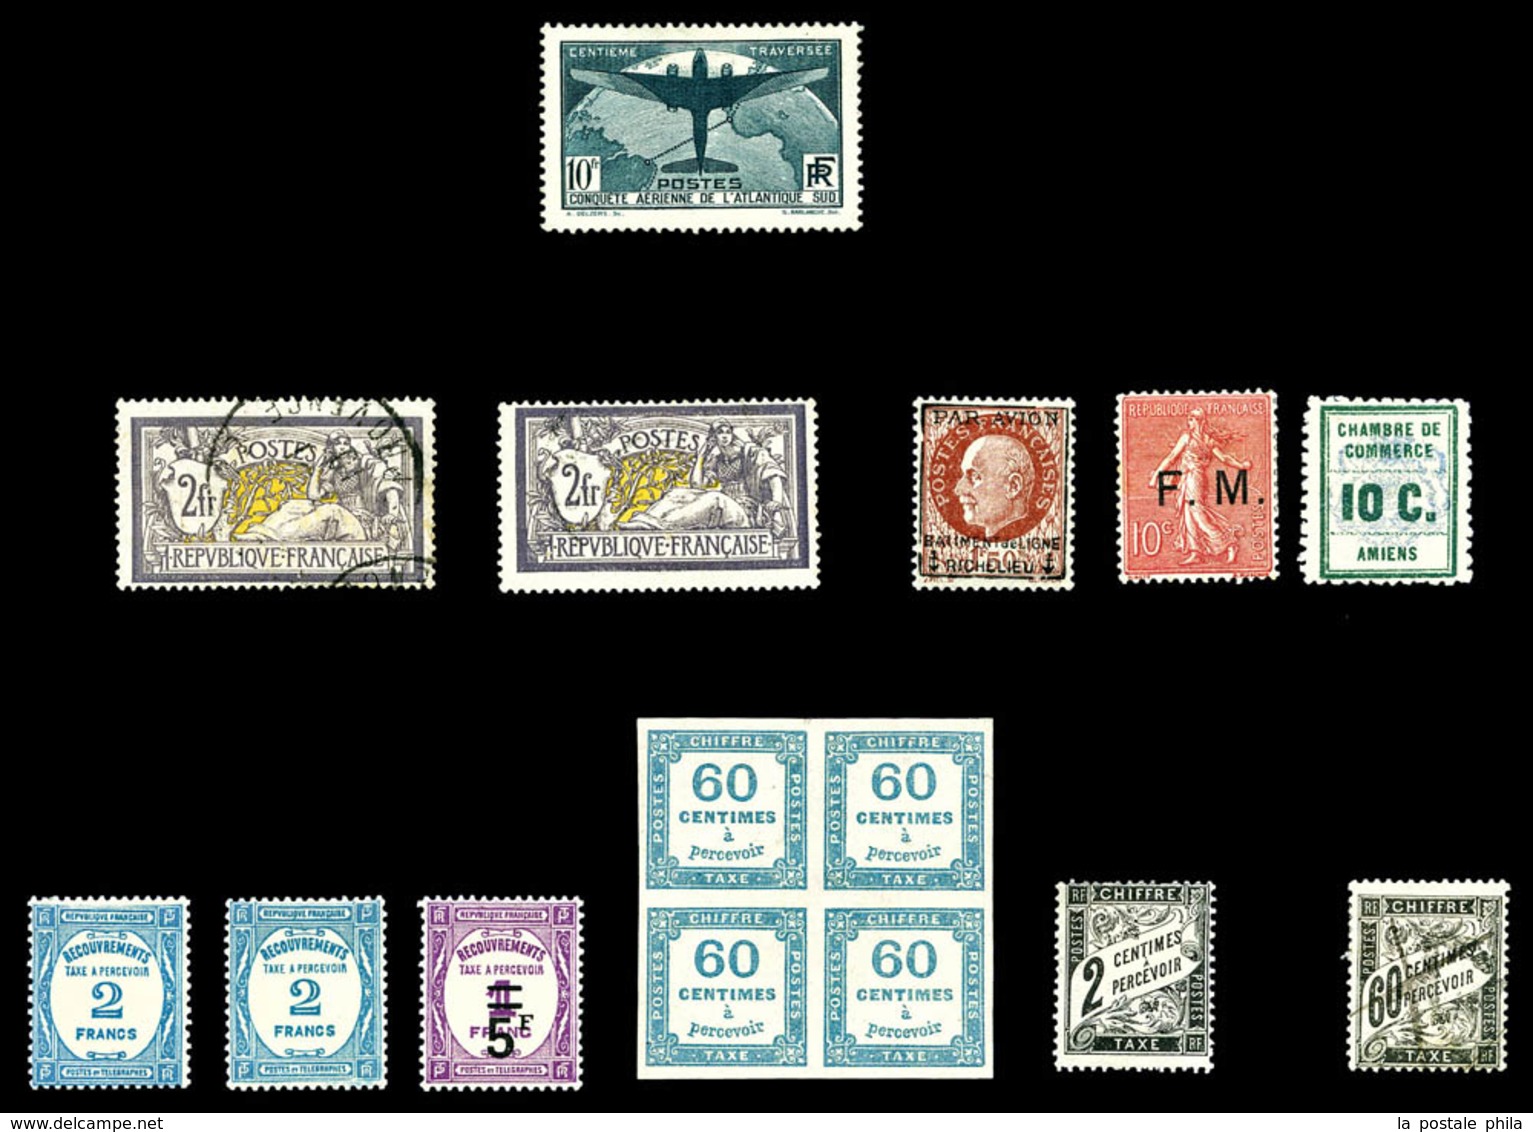 N 1900/1940 , Poste, PA, Blocs, Taxe: Stock de timbres neufs * (qualité variable), comprenant de bonnes valeurs dont Mer